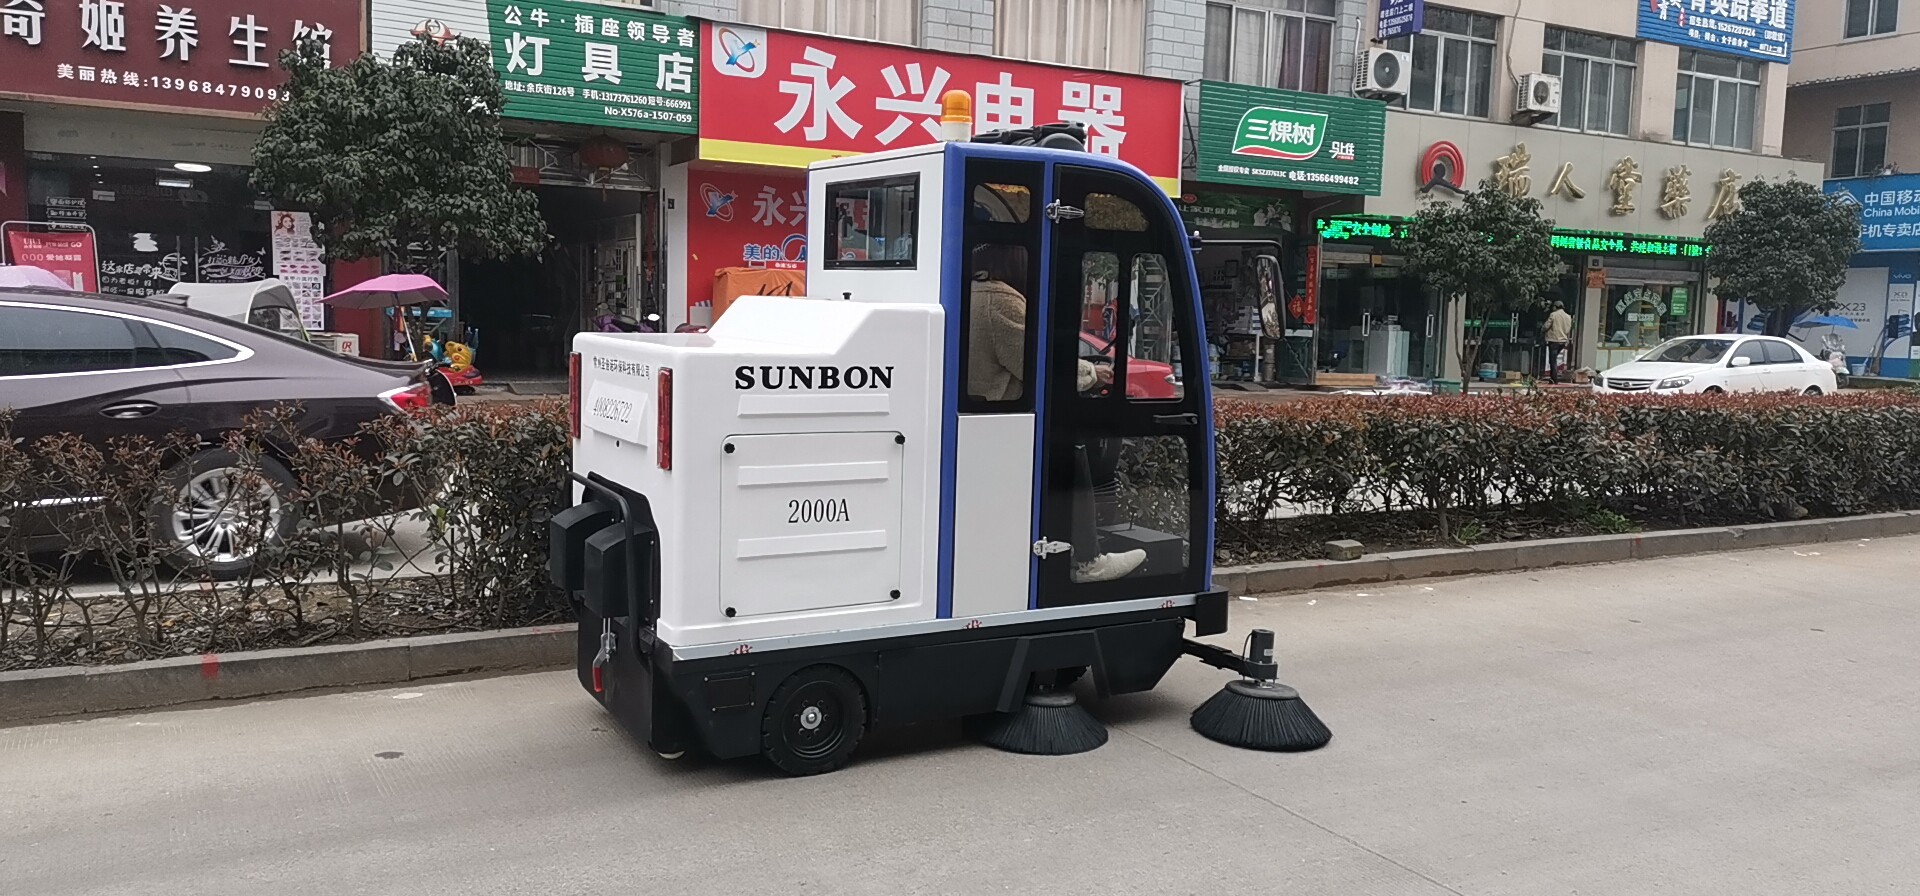  浙江台州新农村街道清扫用上电动扫地车